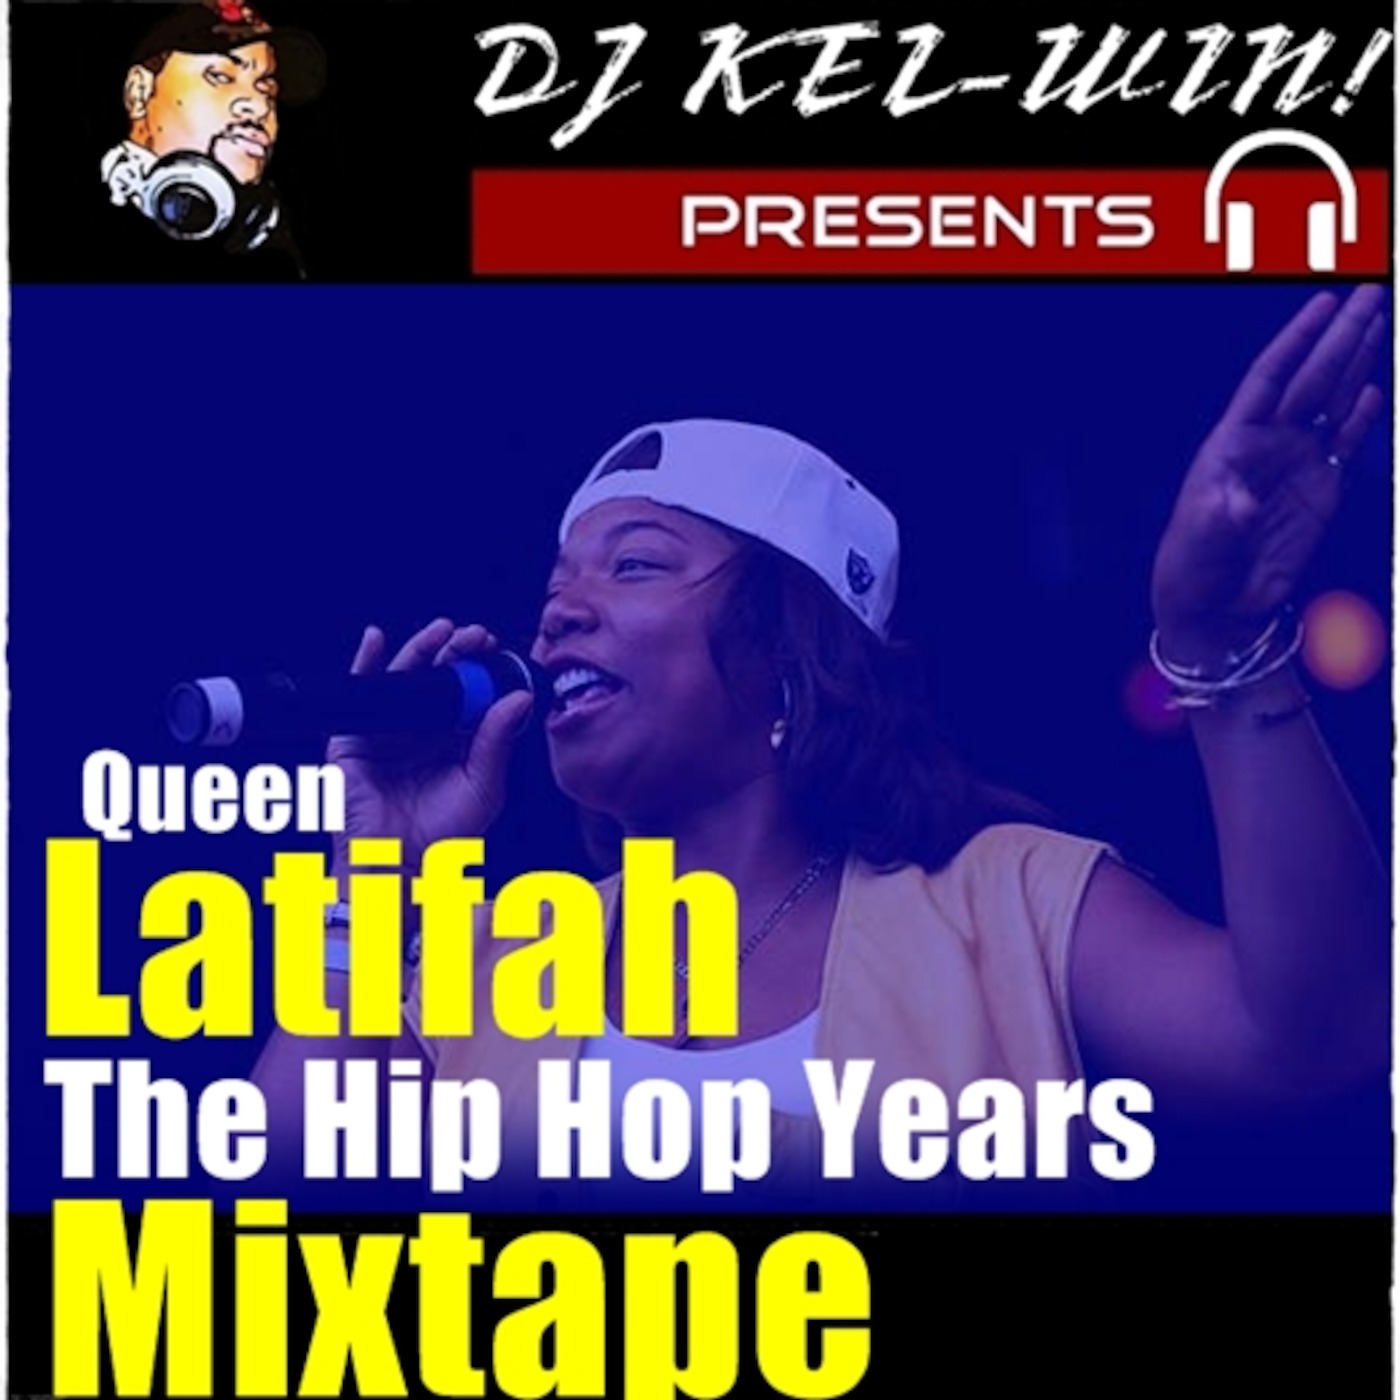 DJ KEL-WIN! Queen Latifah Mixtape (The Hip Hop Years)